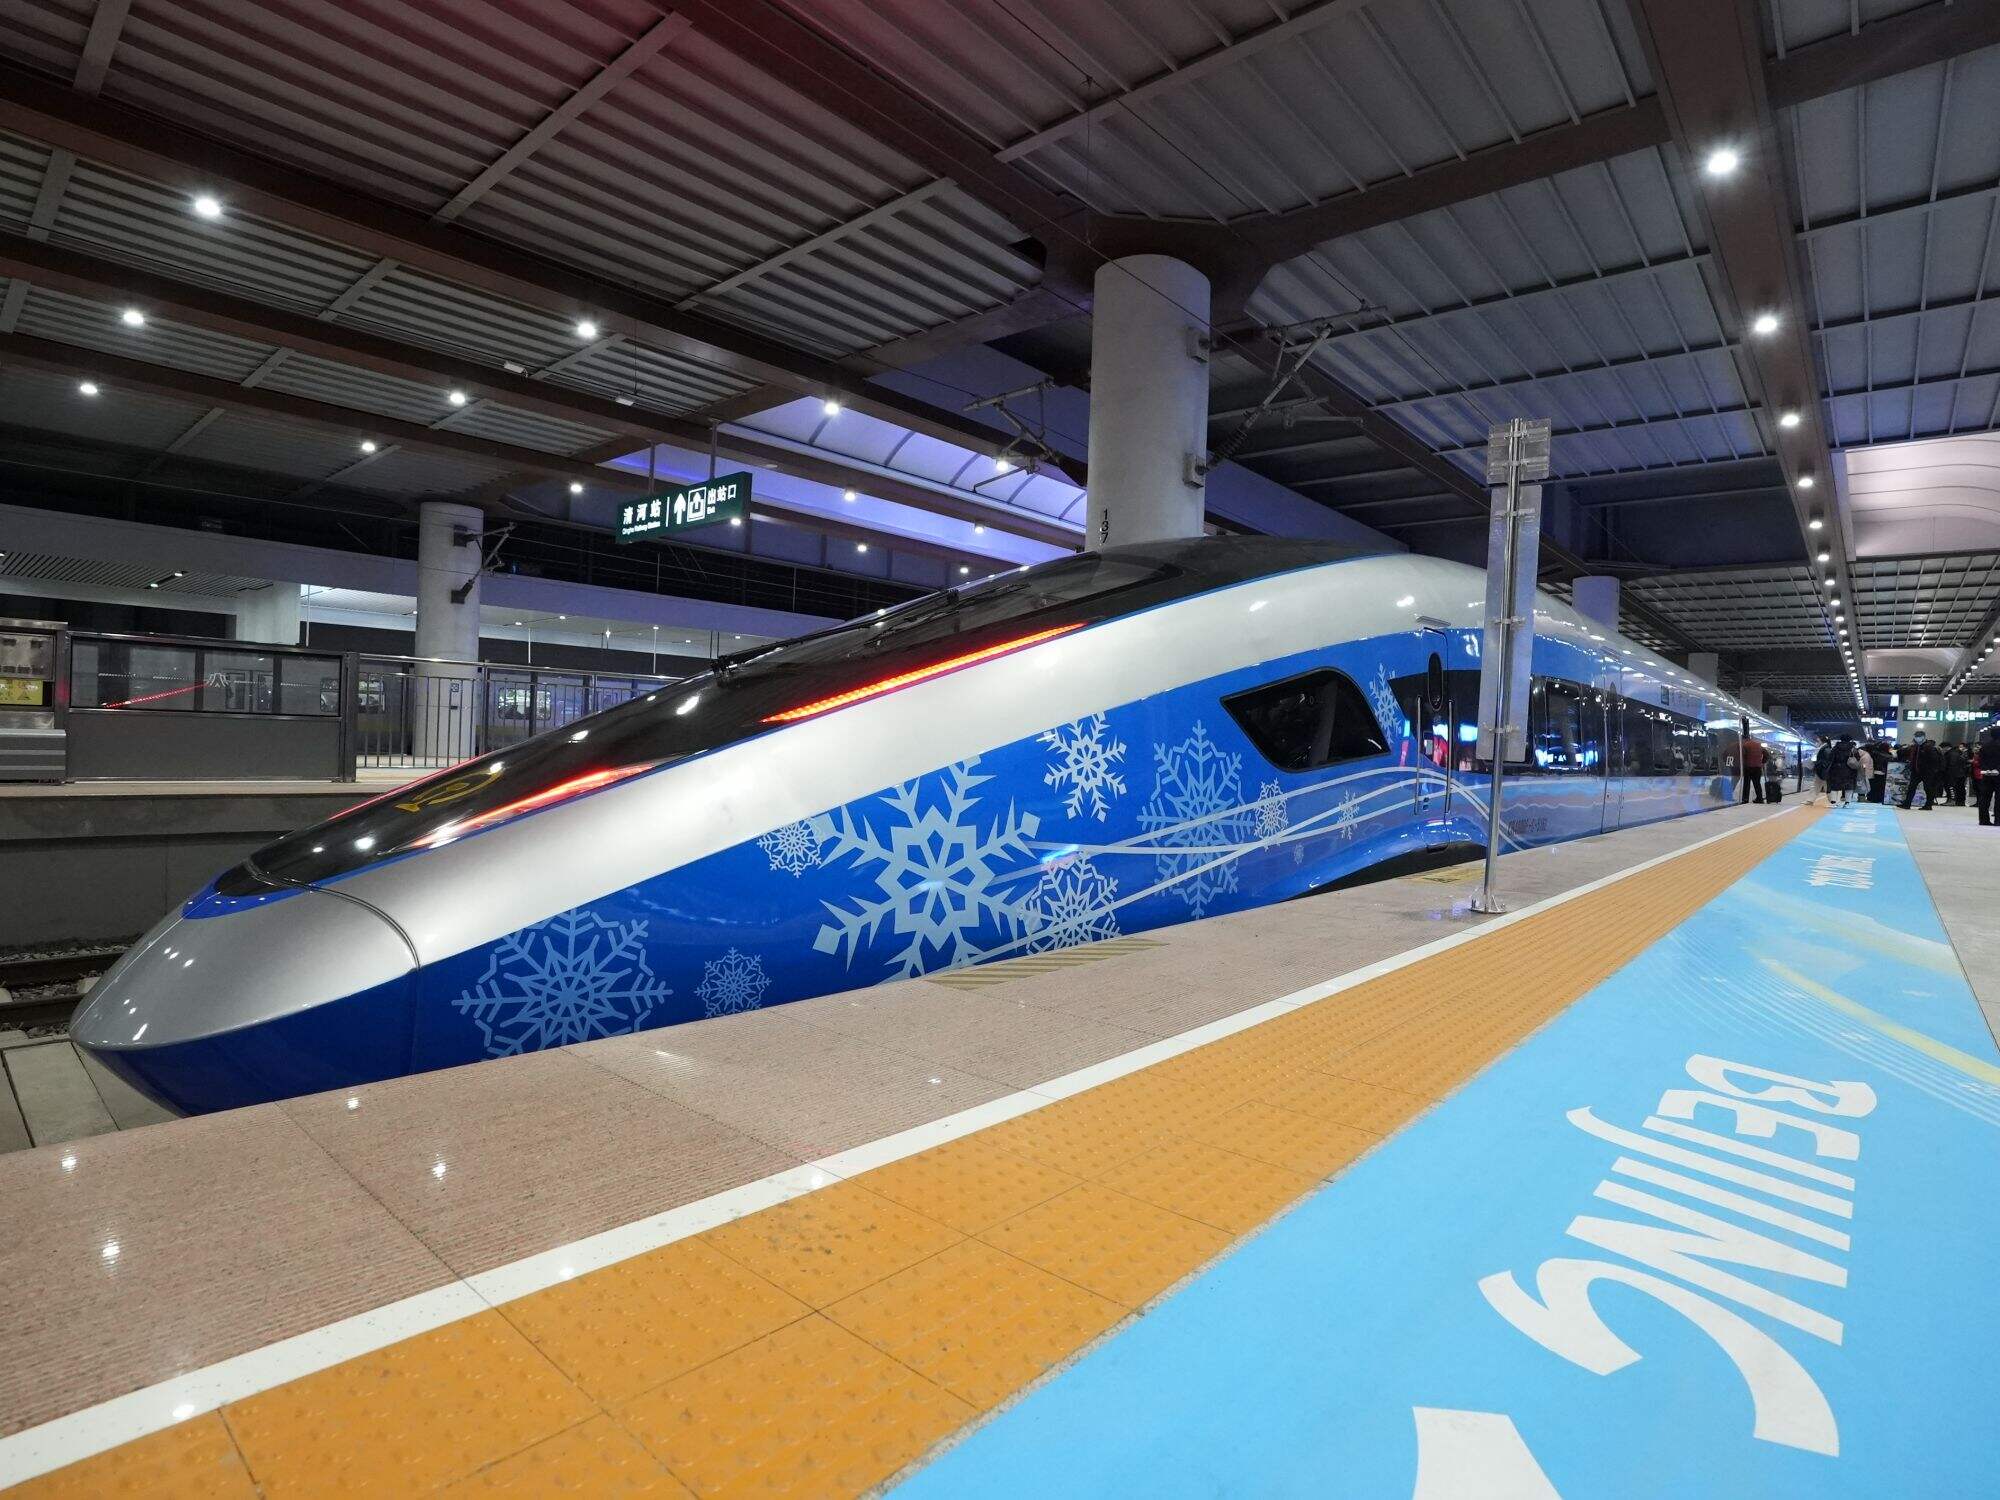 京张高铁冬奥列车开启赛时运输服务